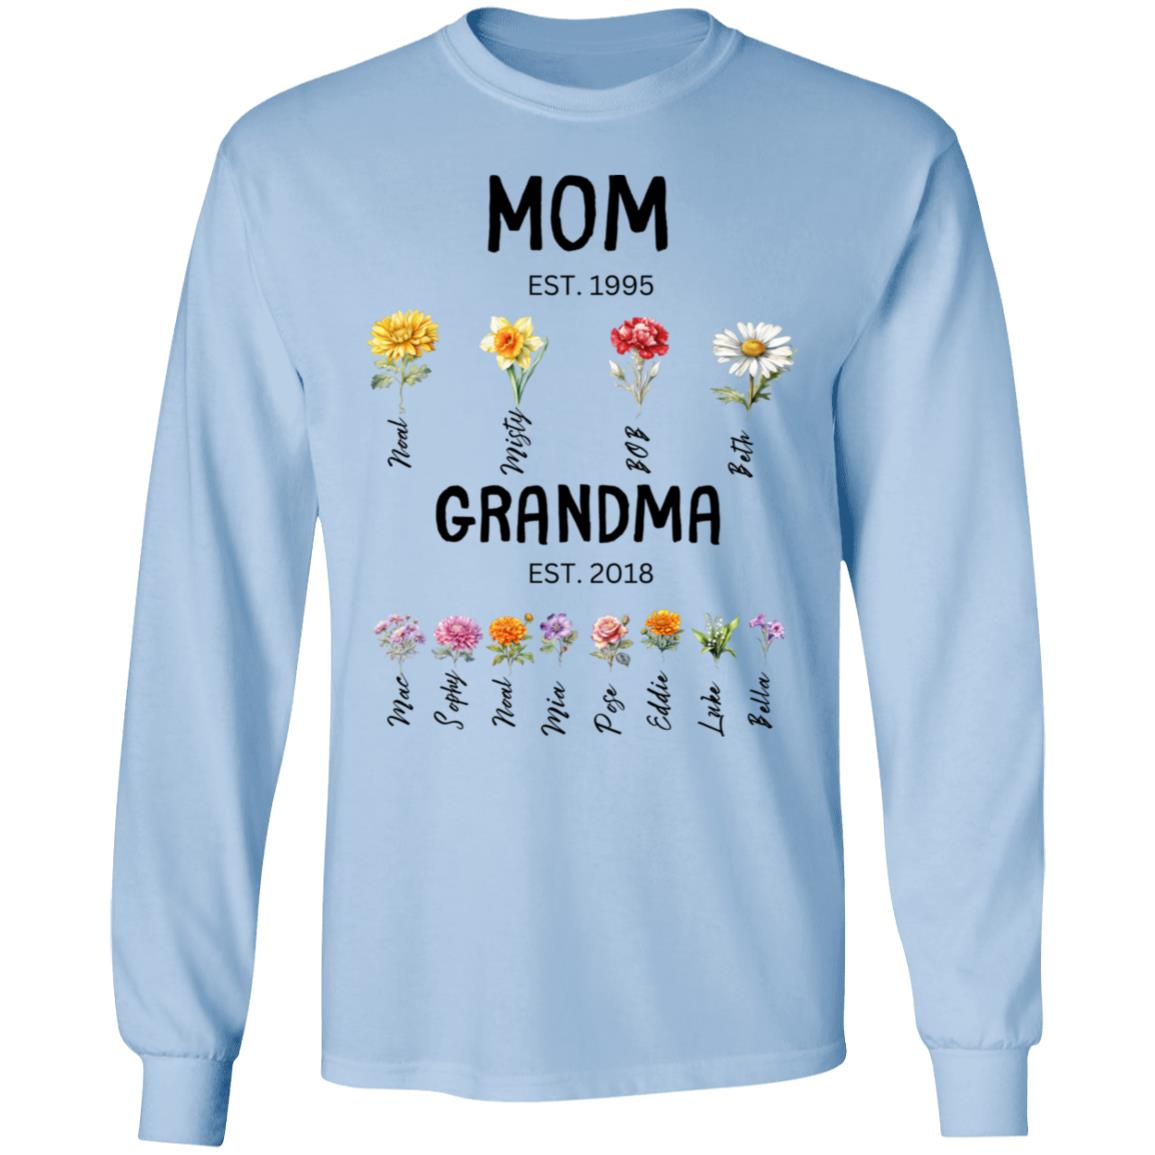 Mom/Grandma EST. Birth flowers Mom/Grandma Est. Birth Flowers. Long Sleeve Shirt